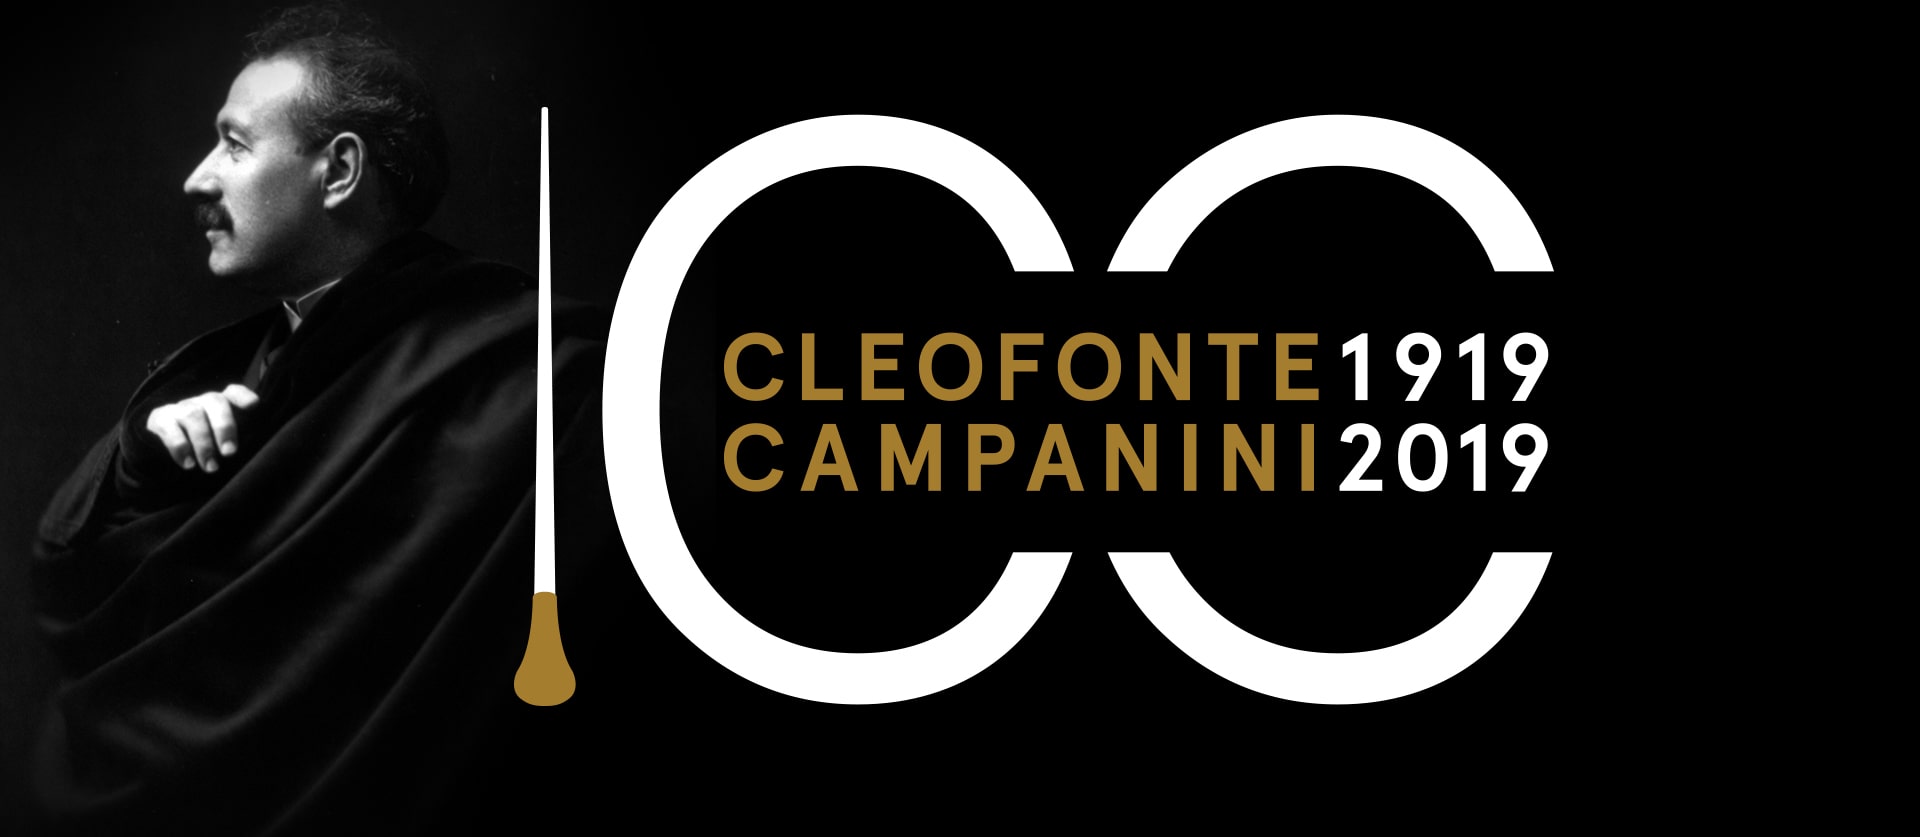 Cleofonte Campanini 1919 2019